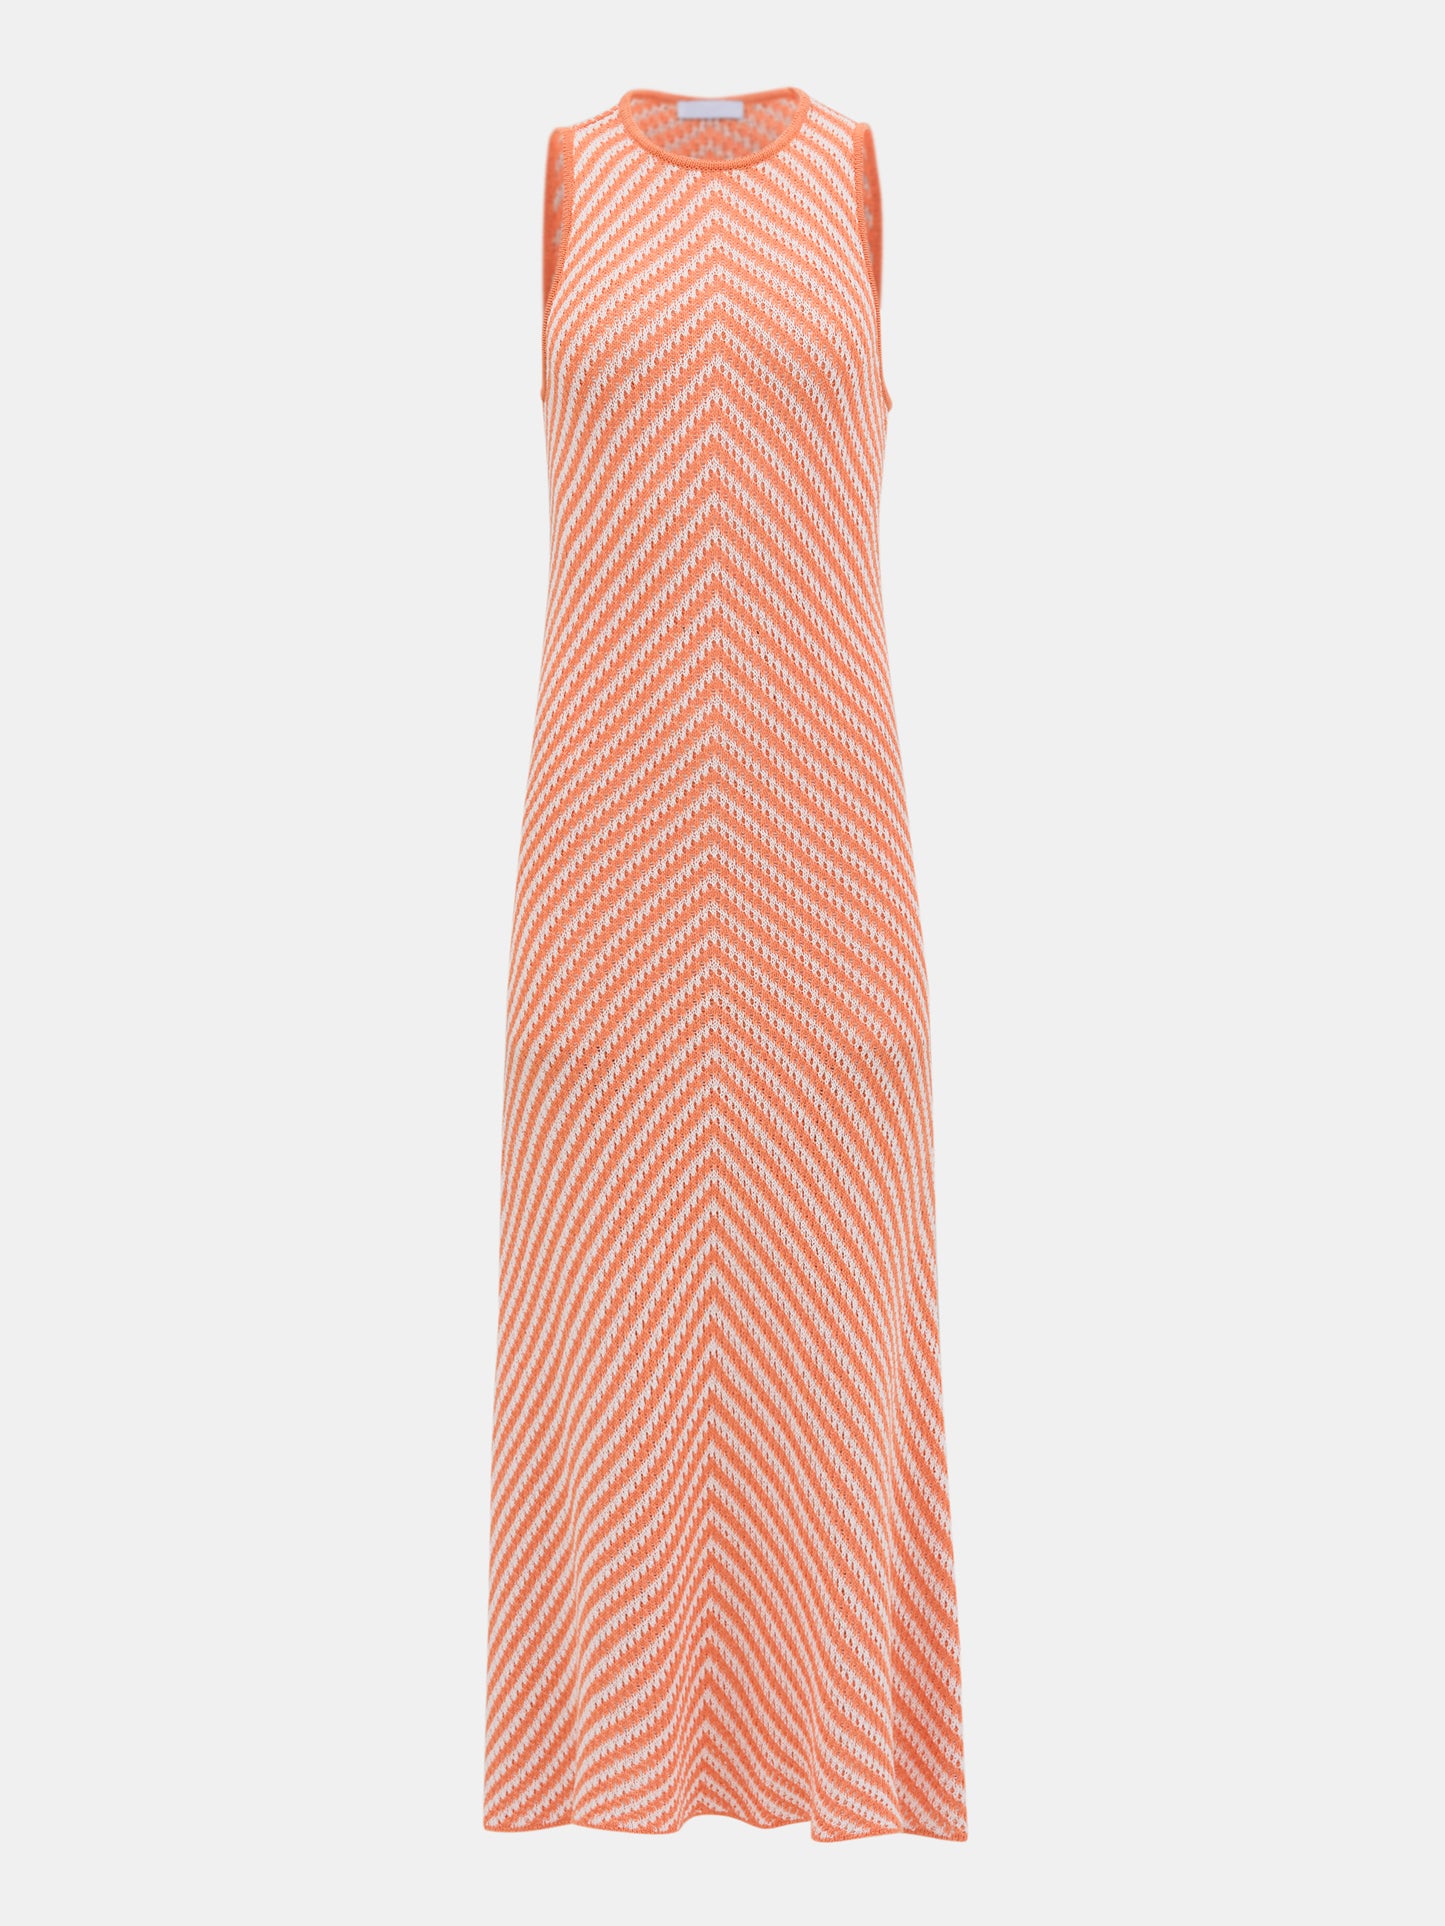 Chevron Knit Long Dress, Orange